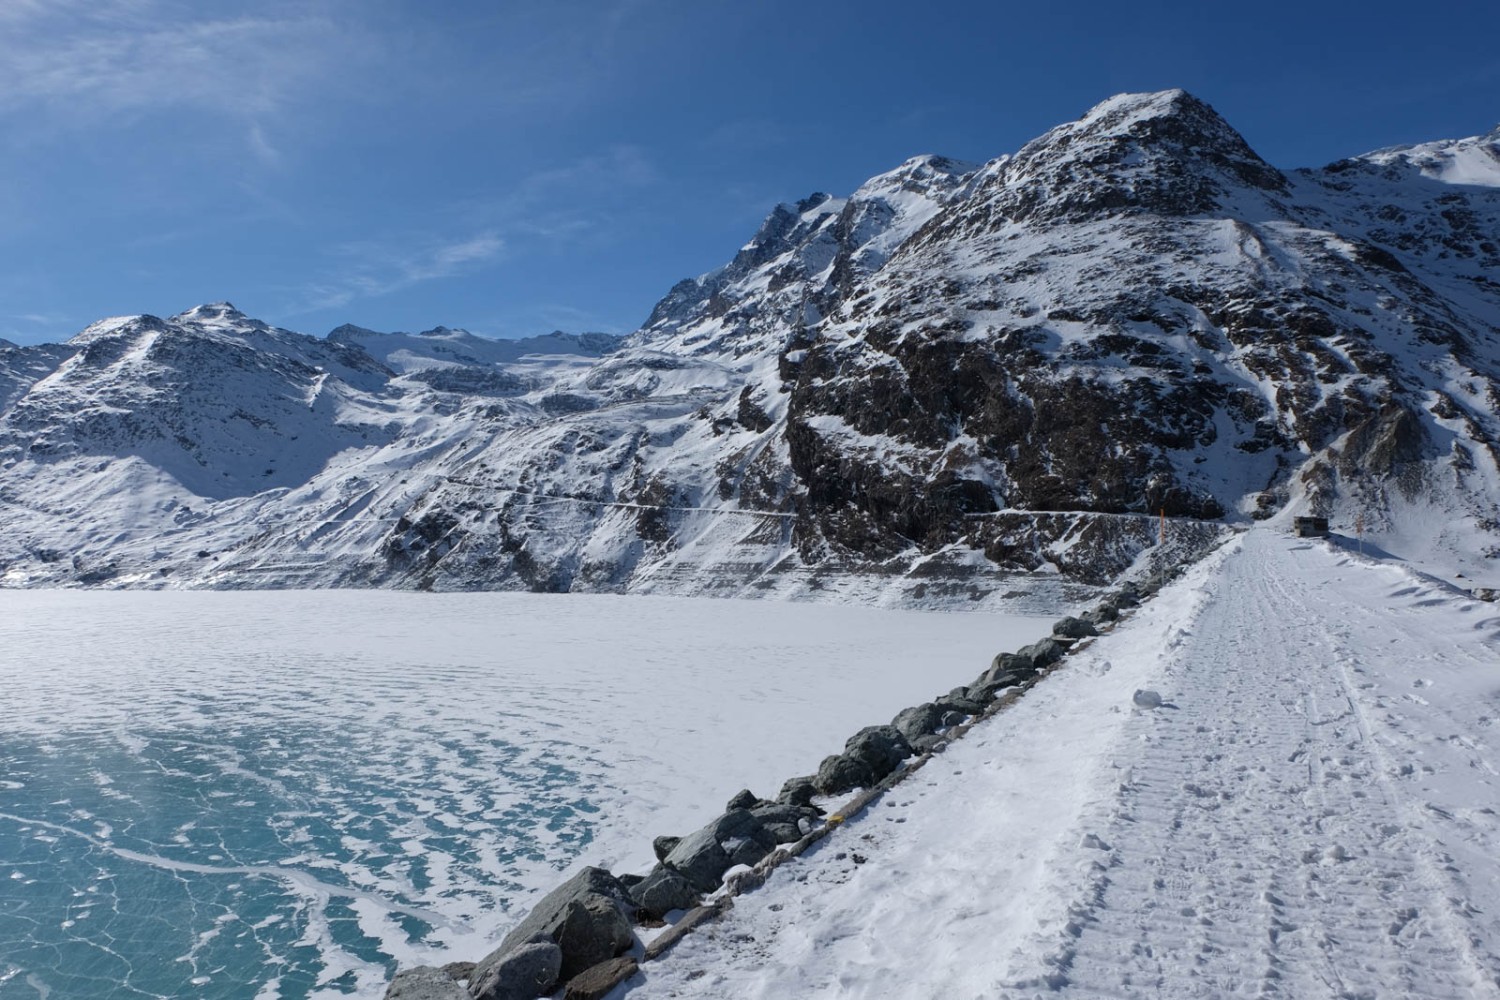 Le chemin de randonnée hivernale traverse le barrage. Photo: Elsbeth Flüeler